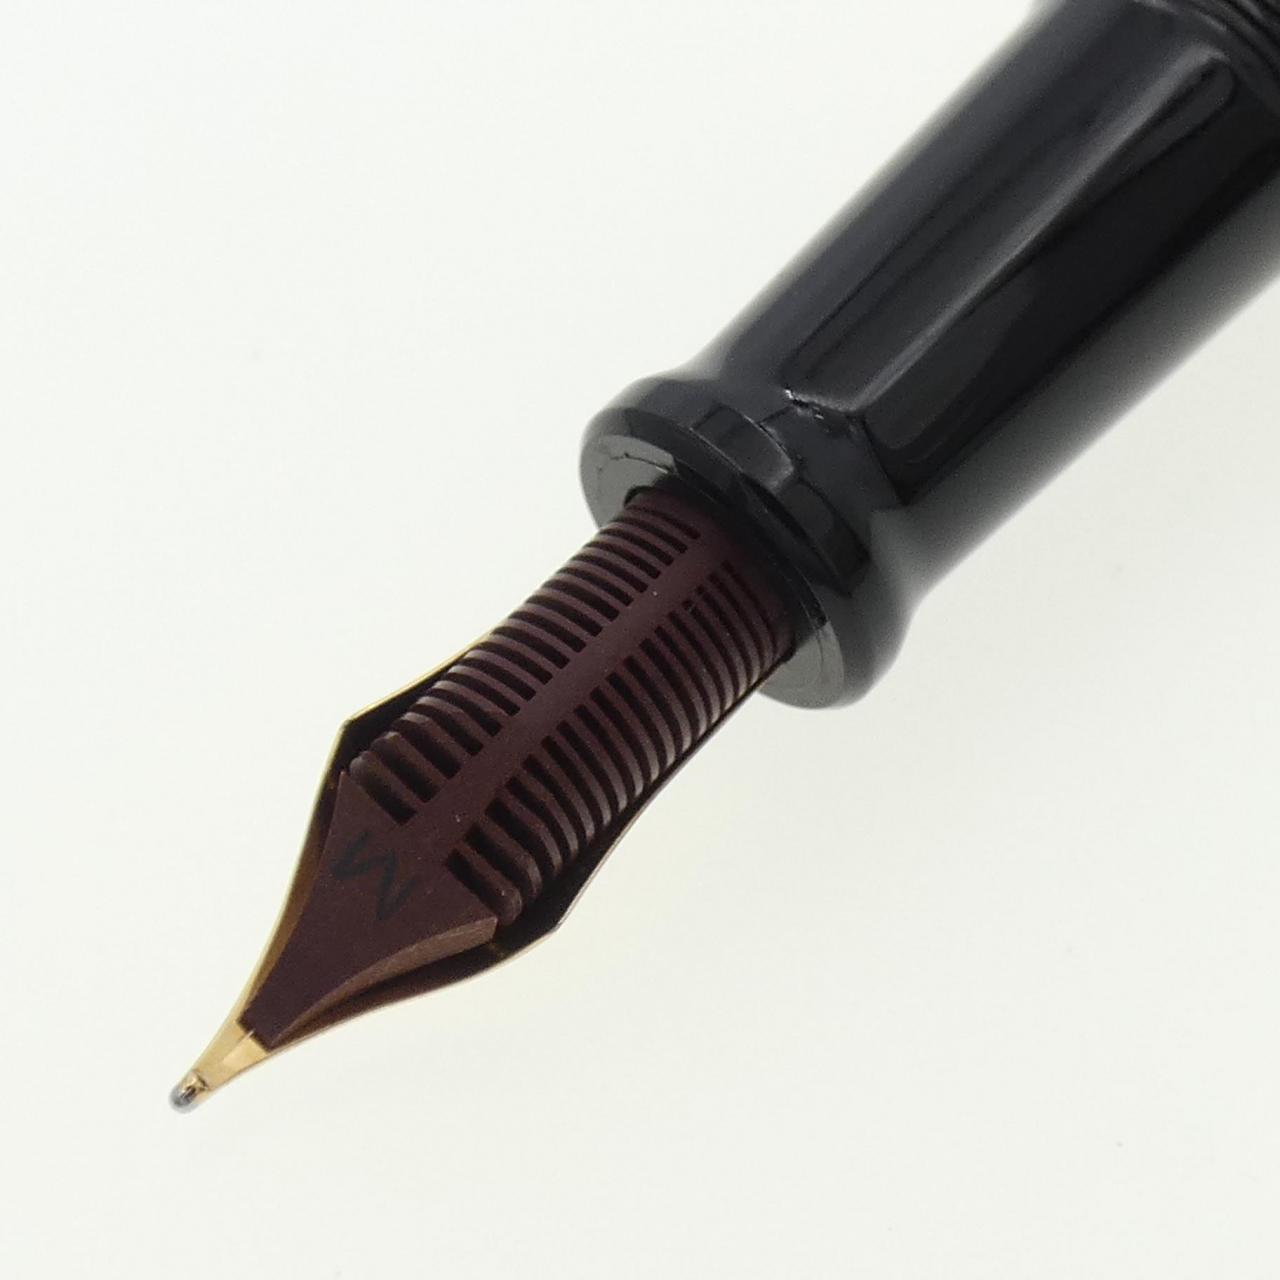 AURORA限量版 88 钢笔